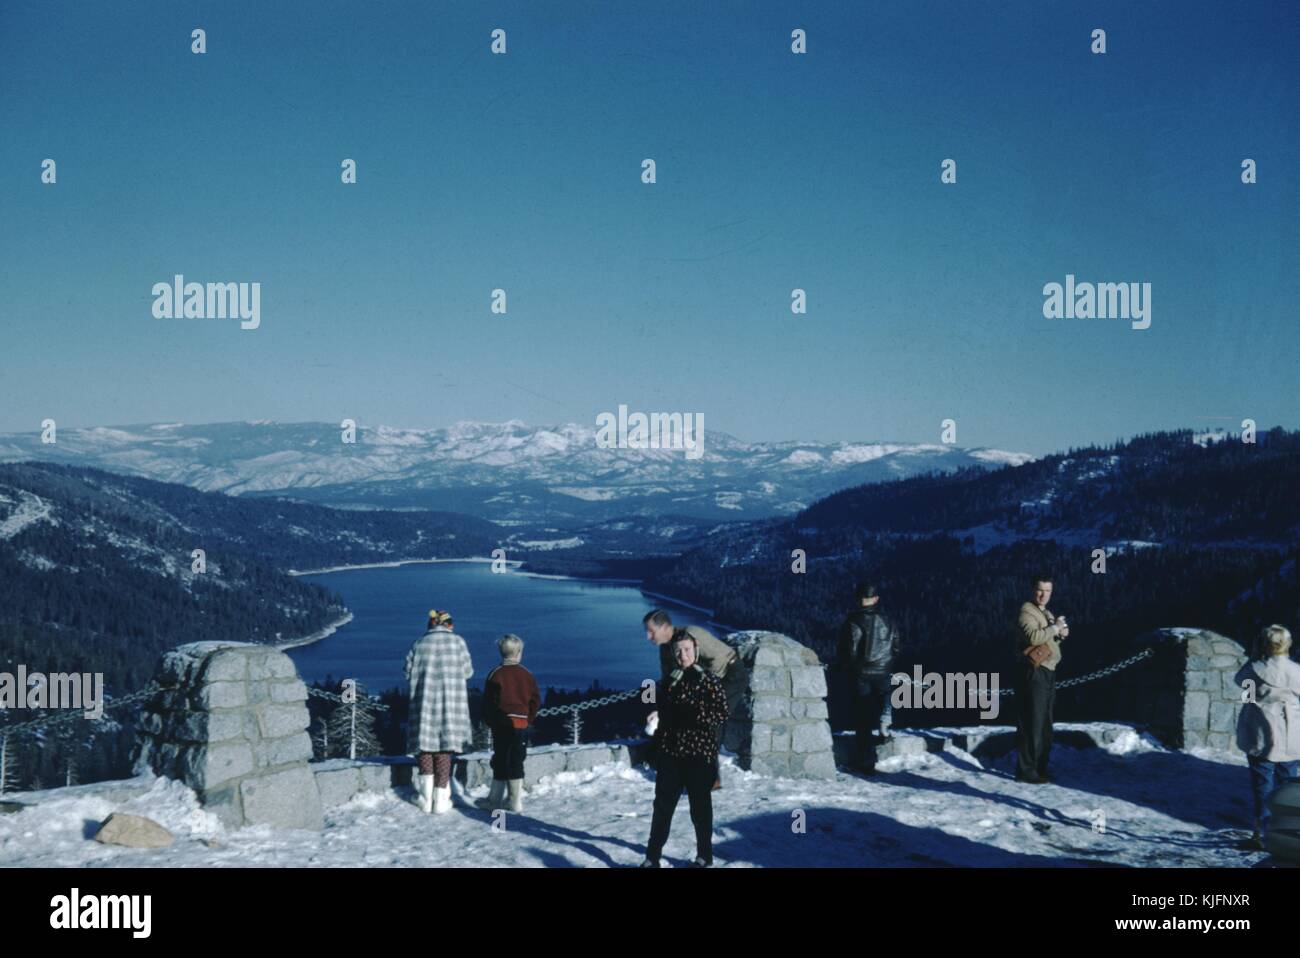 Une photographie d'hommes, de femmes et d'enfants dans une zone d'observation, il y a de la neige qui couvre le sol et tout le monde porte des vêtements d'hiver, la zone d'observation surplombe un grand lac bleu et des montagnes couvertes d'arbres et de neige, 1952. Banque D'Images